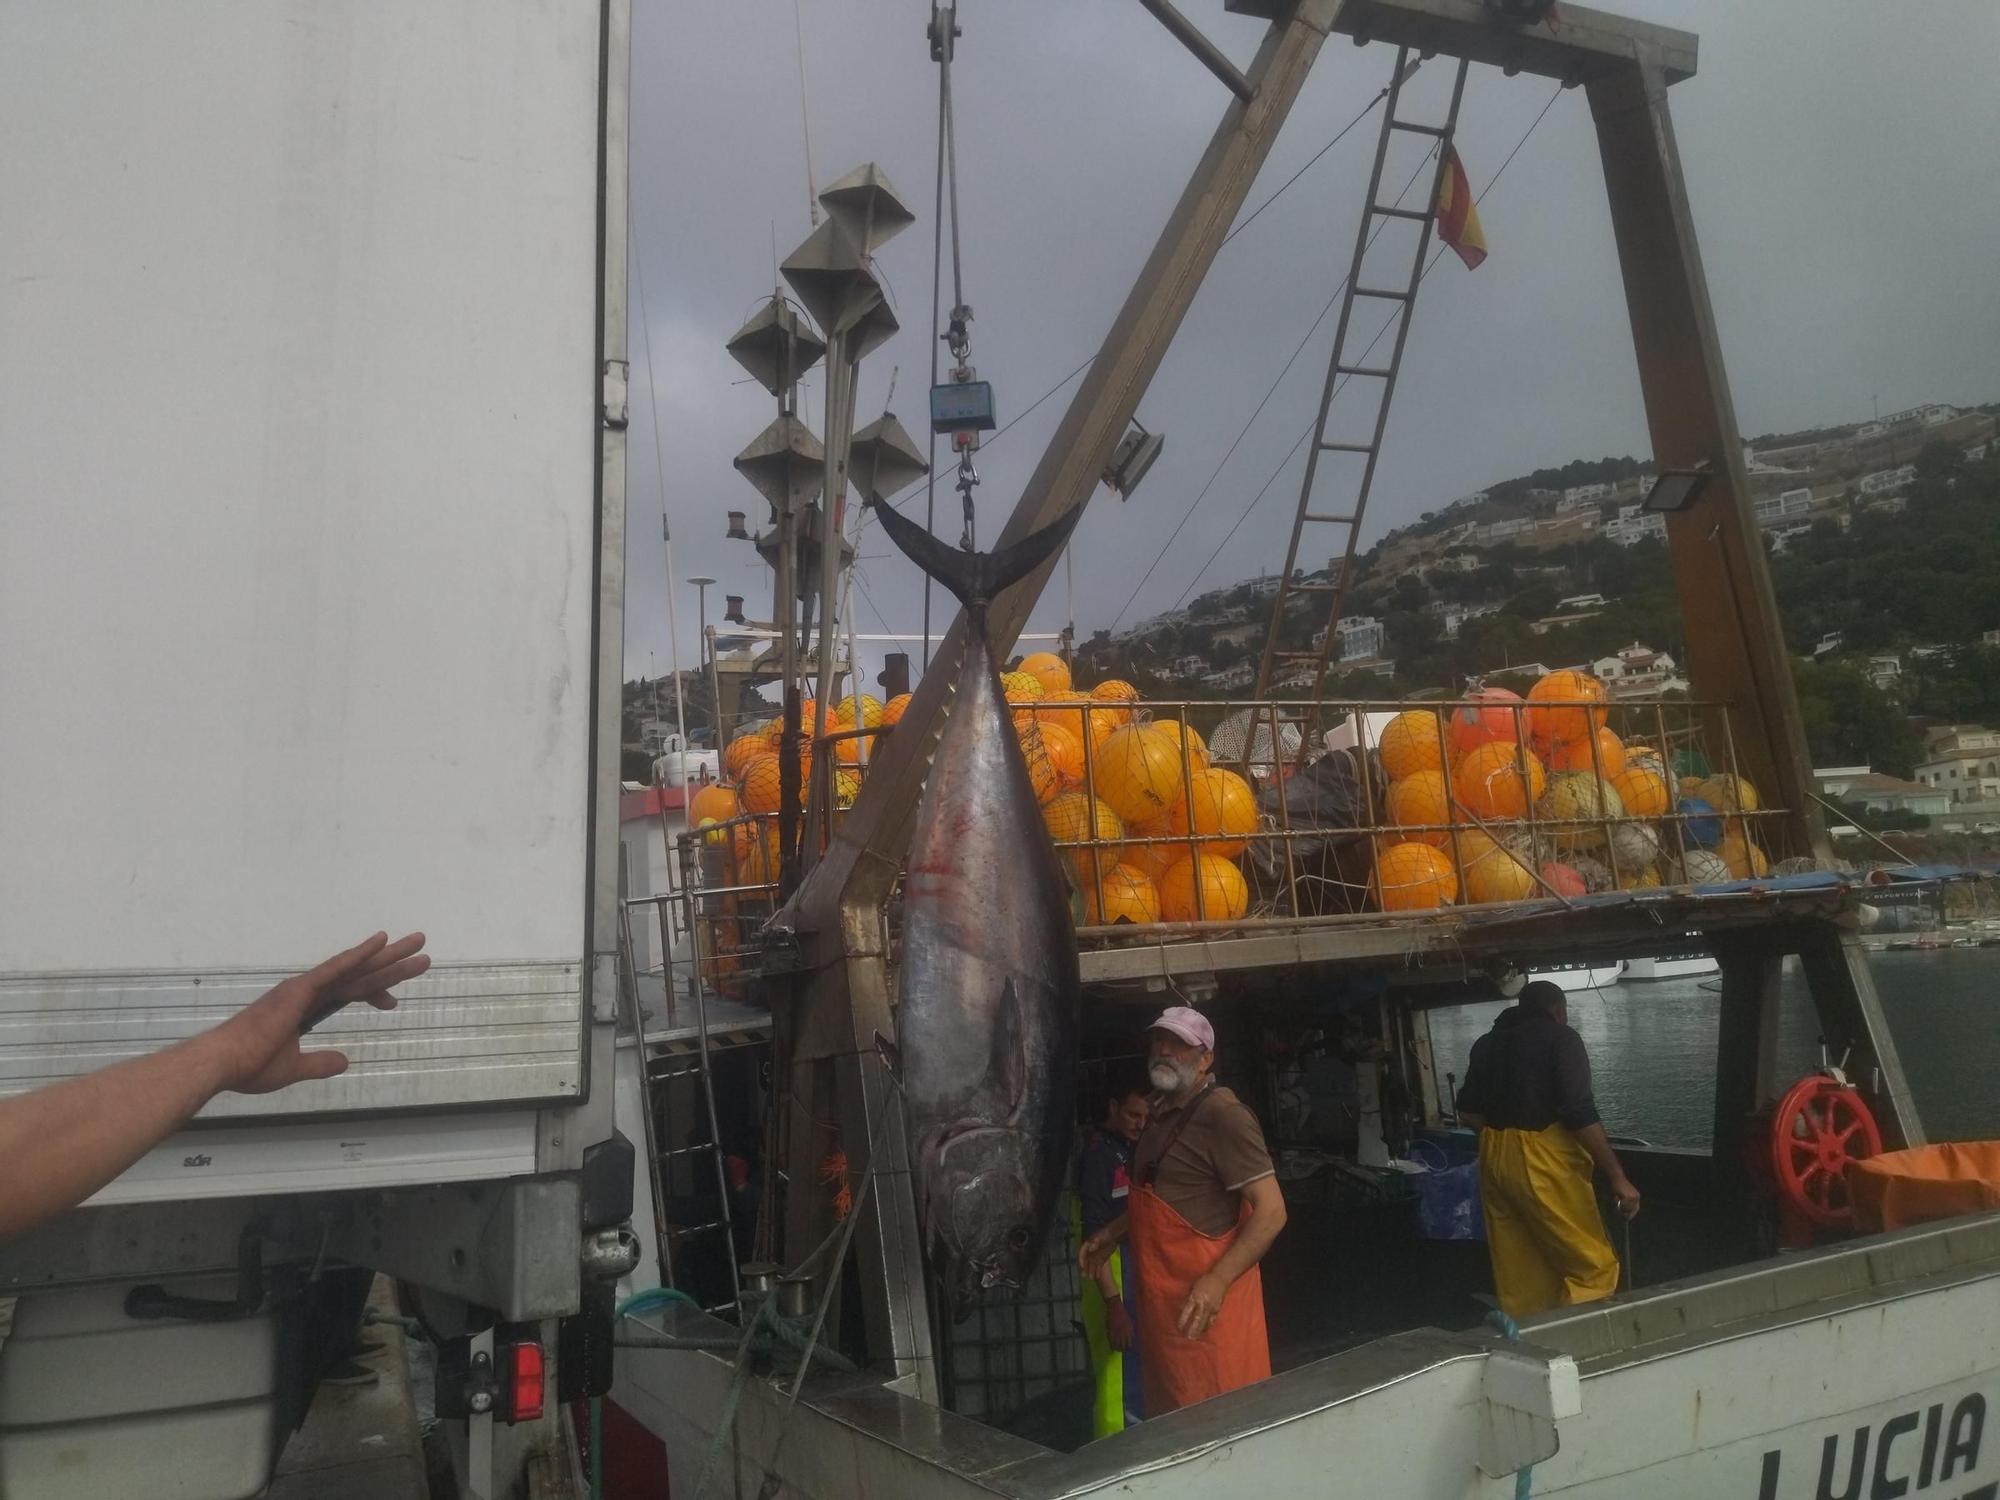 Xàbia, el gran puerto del atún rojo (imágenes)